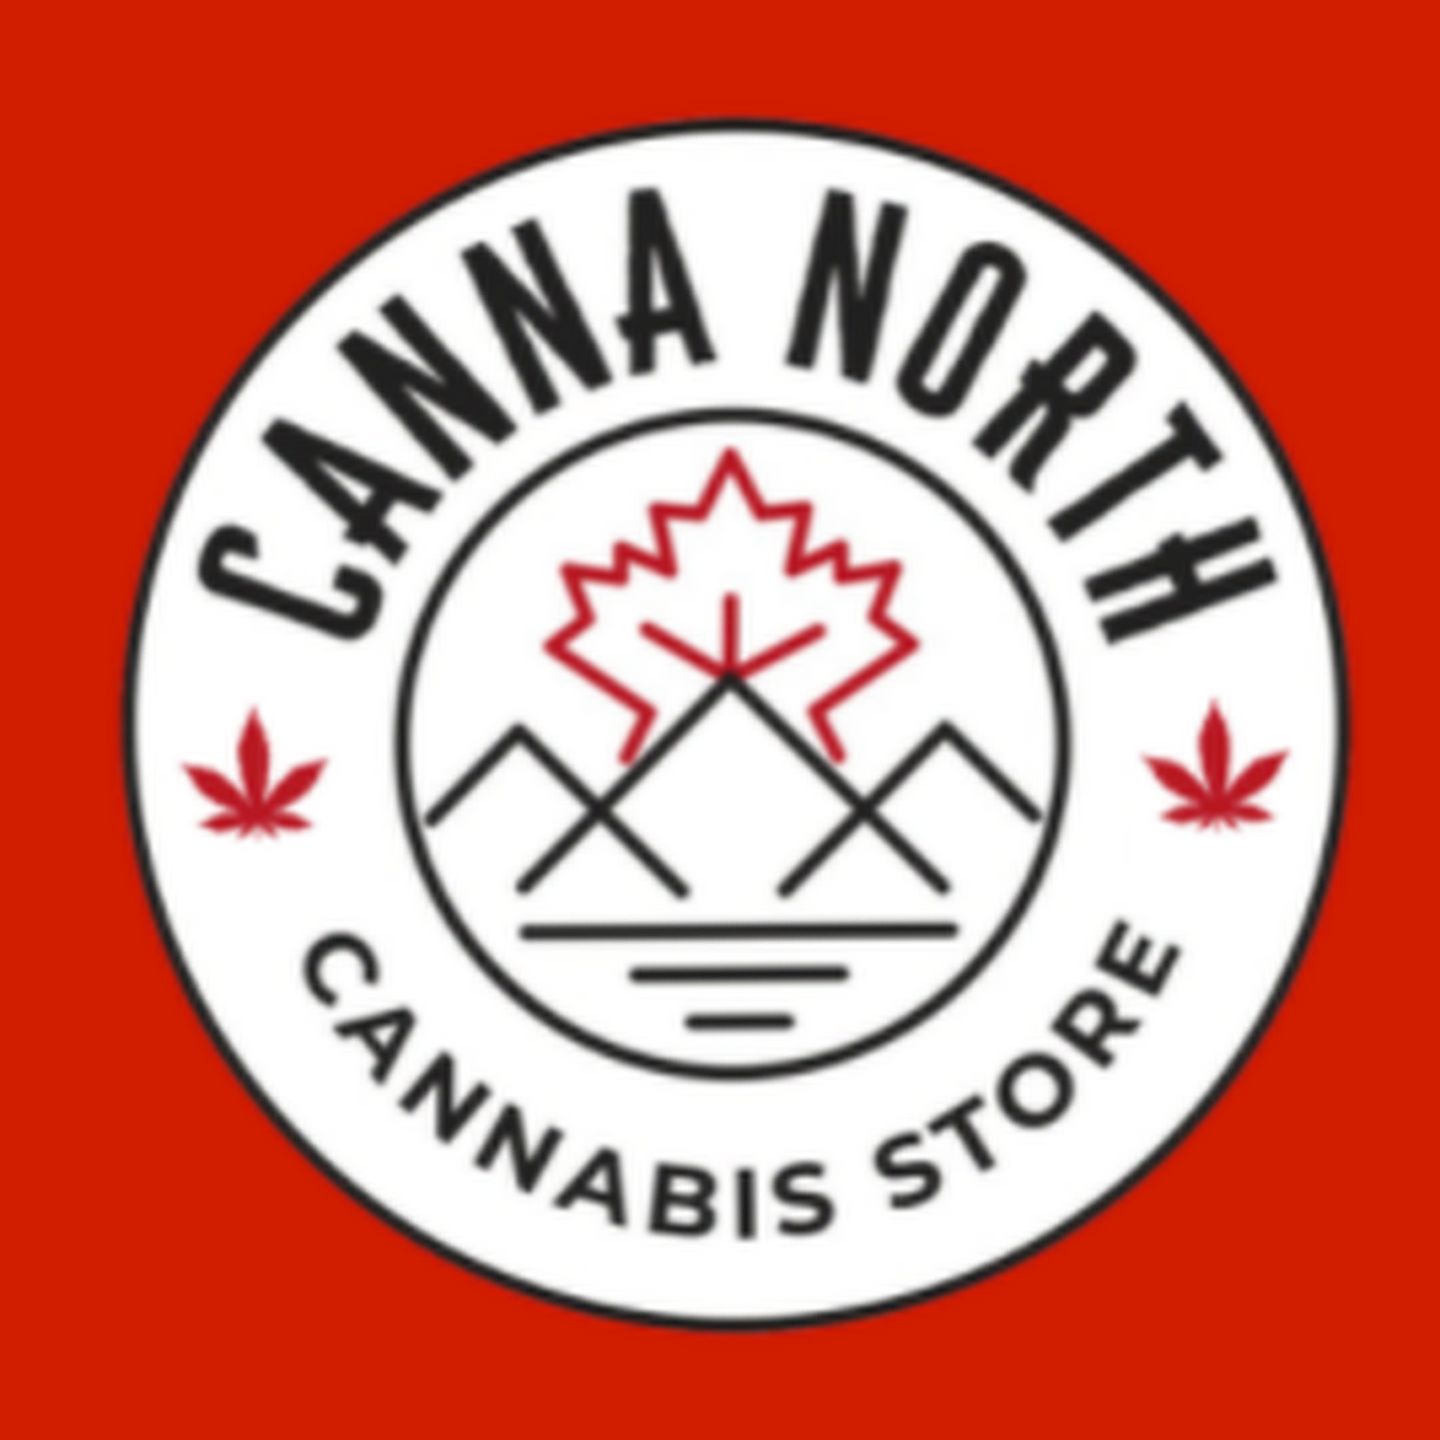 image feature Canna North Cannabis Store - Preston